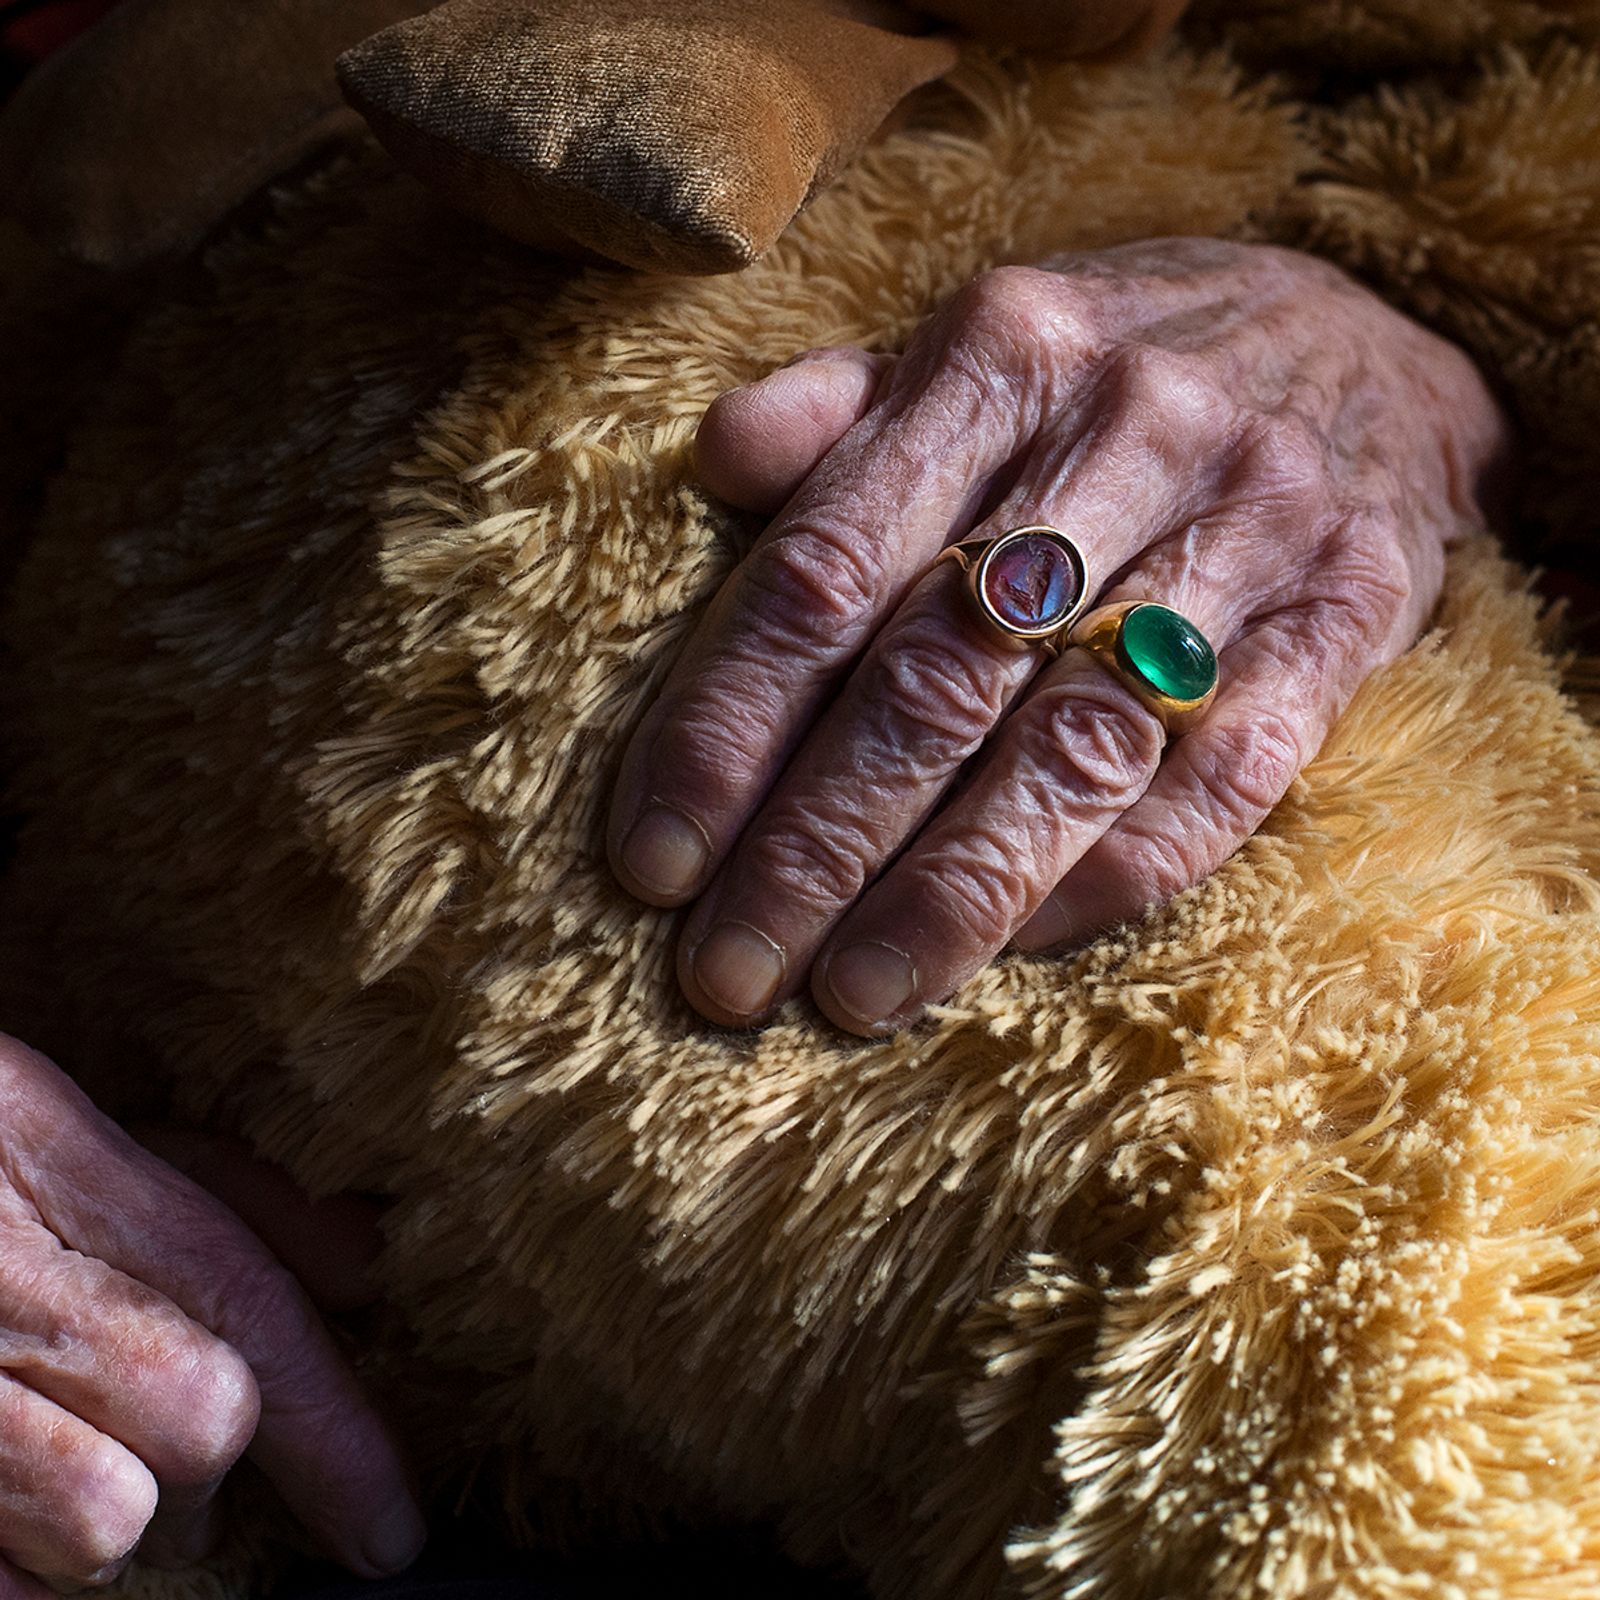 © Melissa Ianniello - The hands of Edda Billi, 87 years old (Rome – Lazio).